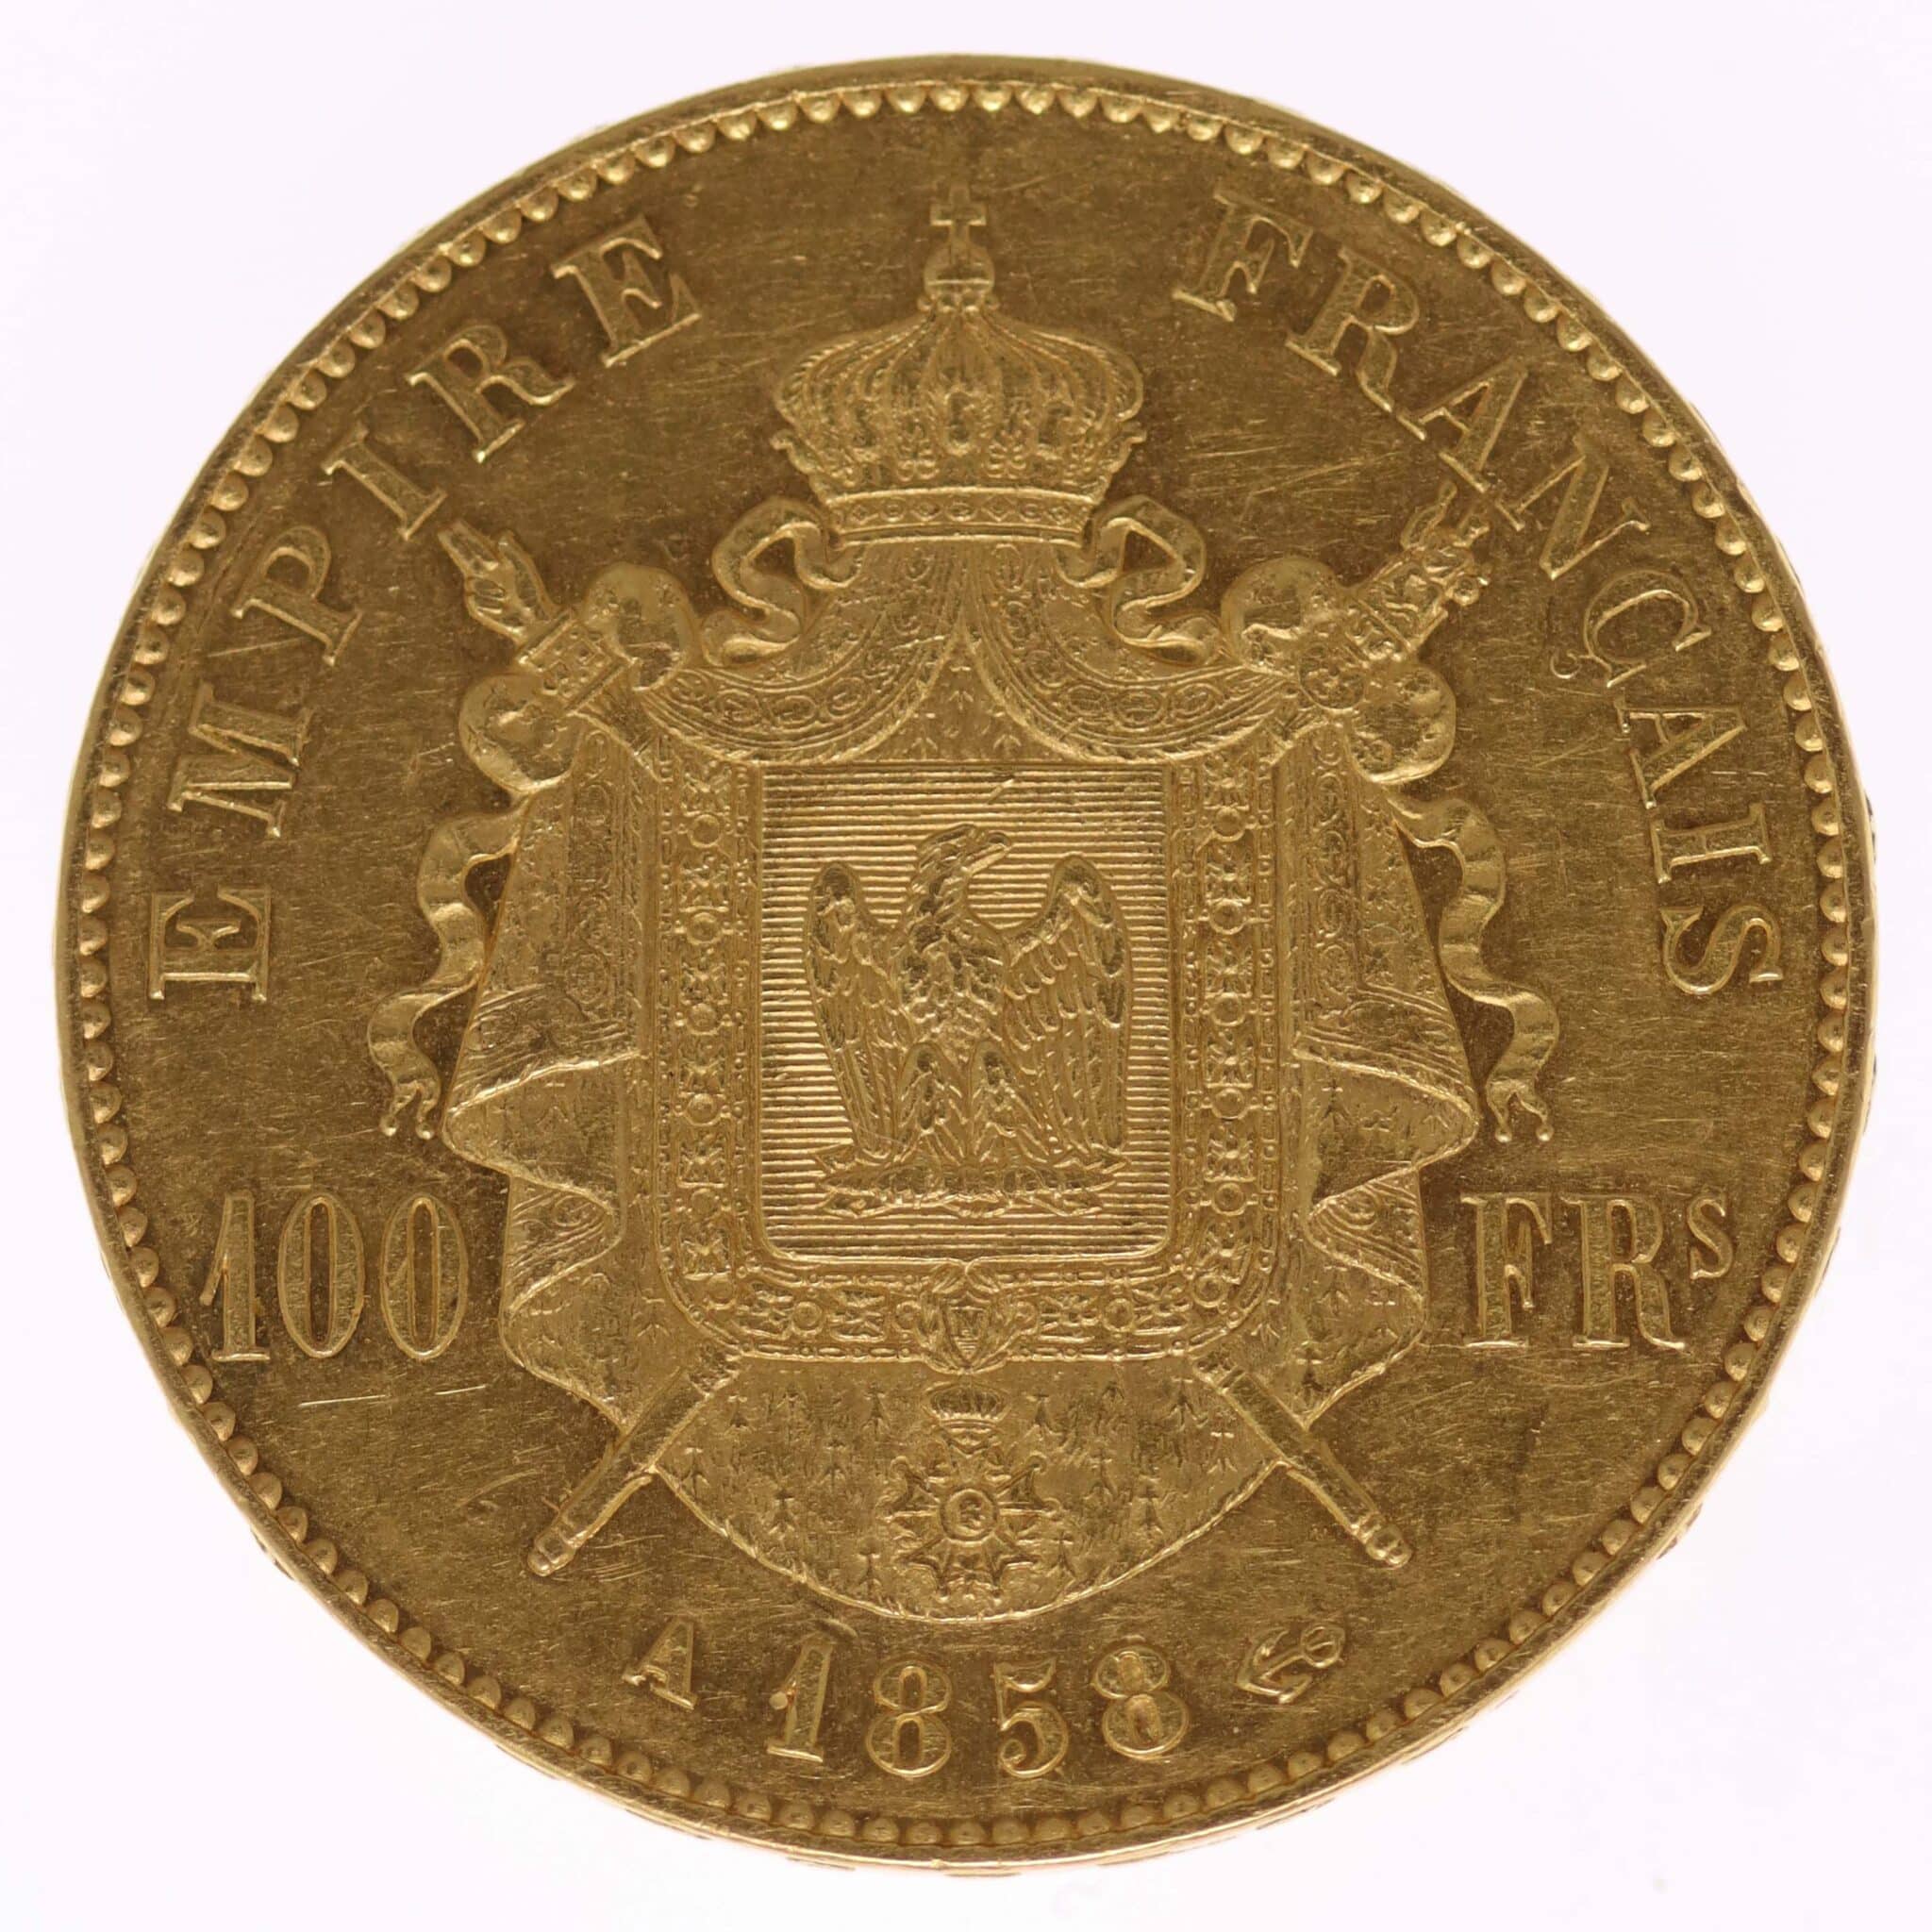 frankreich - Frankreich Napoleon III. 100 Francs 1858 A